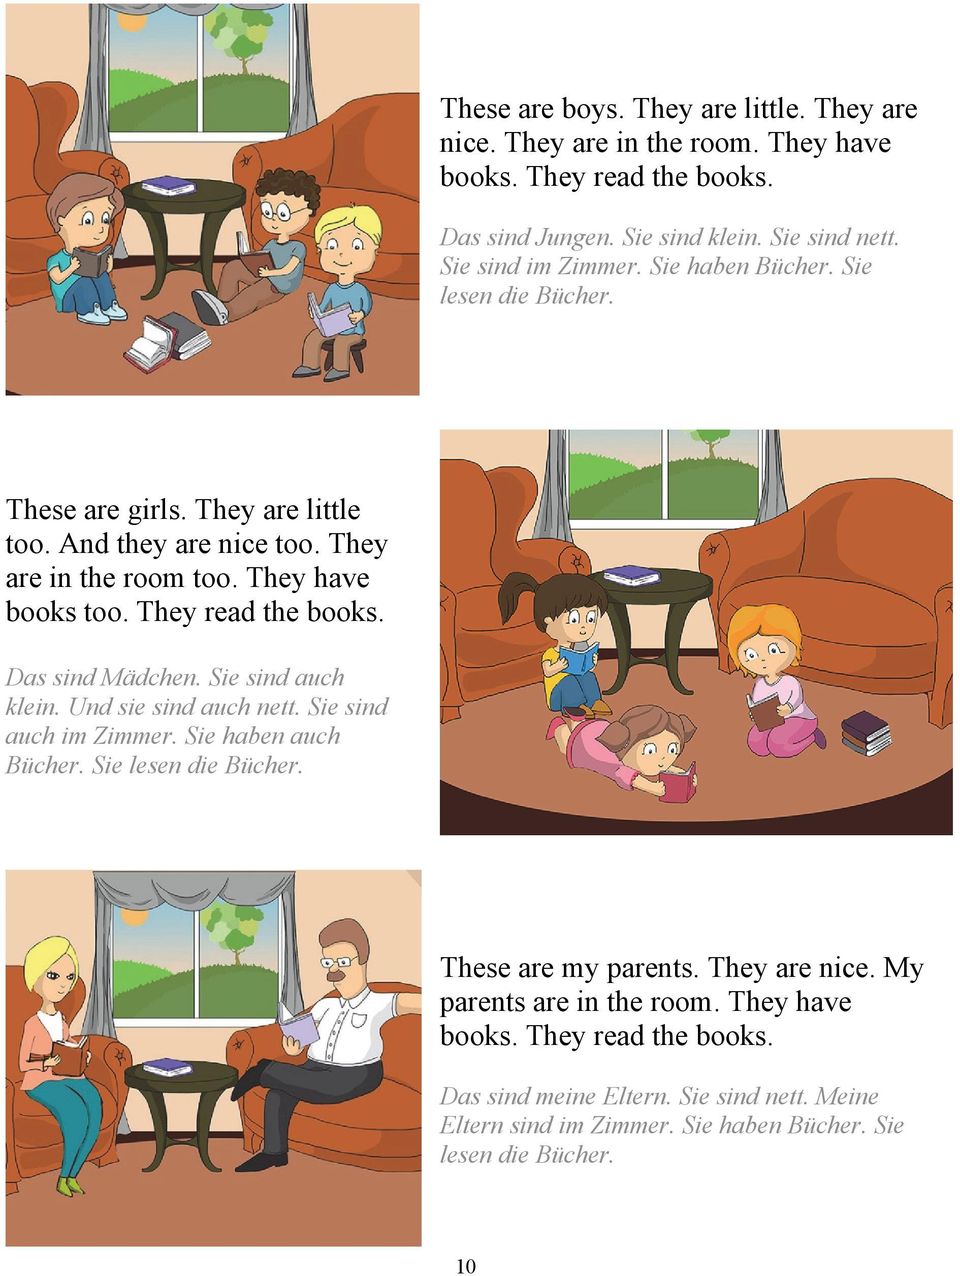 They read the books. Das sind Mädchen. Sie sind auch klein. Und sie sind auch nett. Sie sind auch im Zimmer. Sie haben auch Bücher. Sie lesen die Bücher.